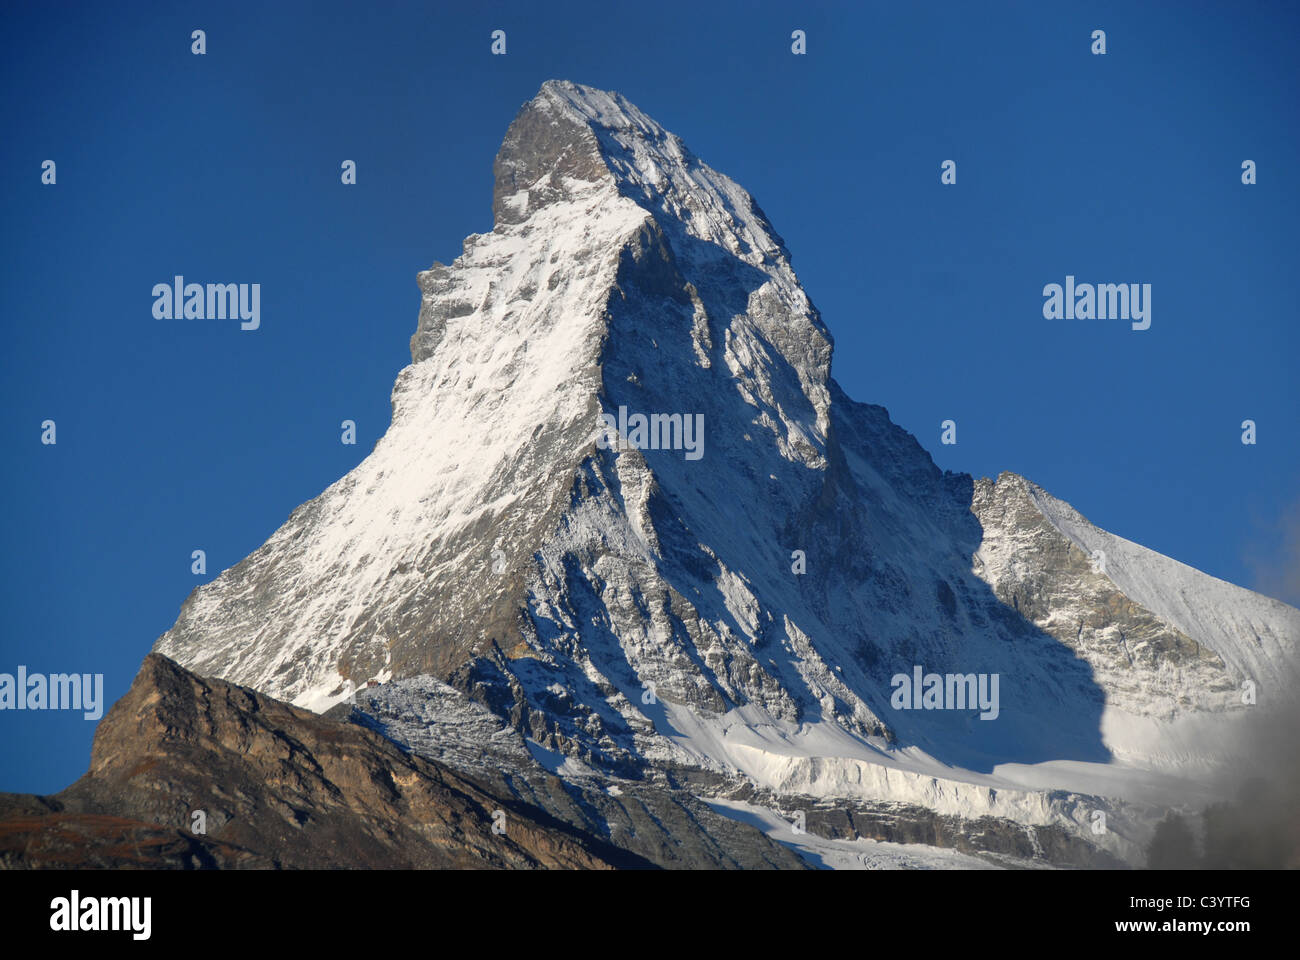 Matterhorn, Zermatt, Valais, mountain, mountains, autumn, fog, Alps, Swiss, Switzerland, blue, sky, scenery, Alpine, Stock Photo